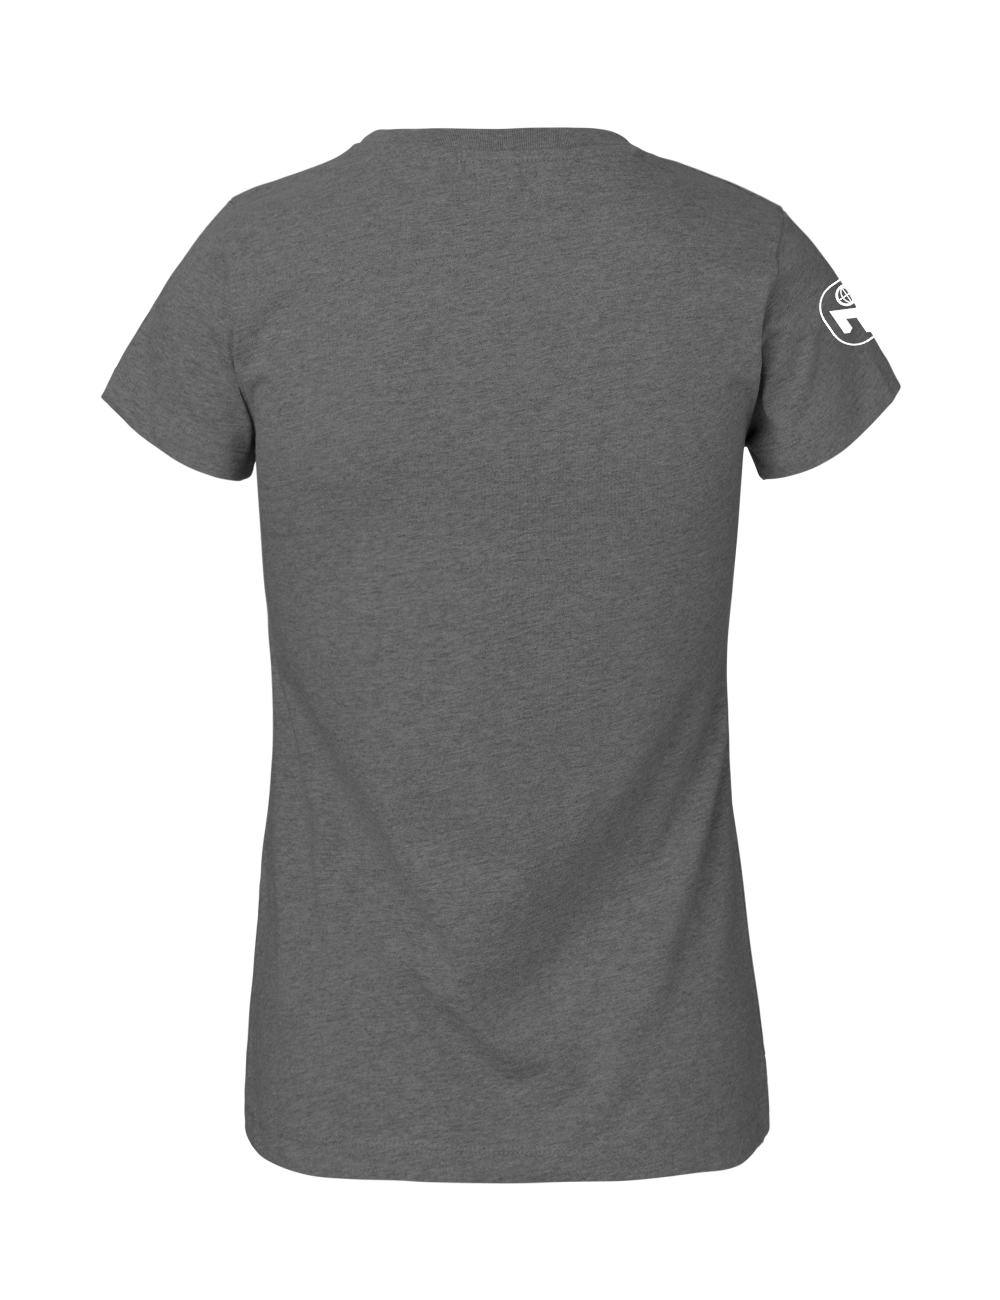 T-Shirt Damen "Nerdschutz" Premium